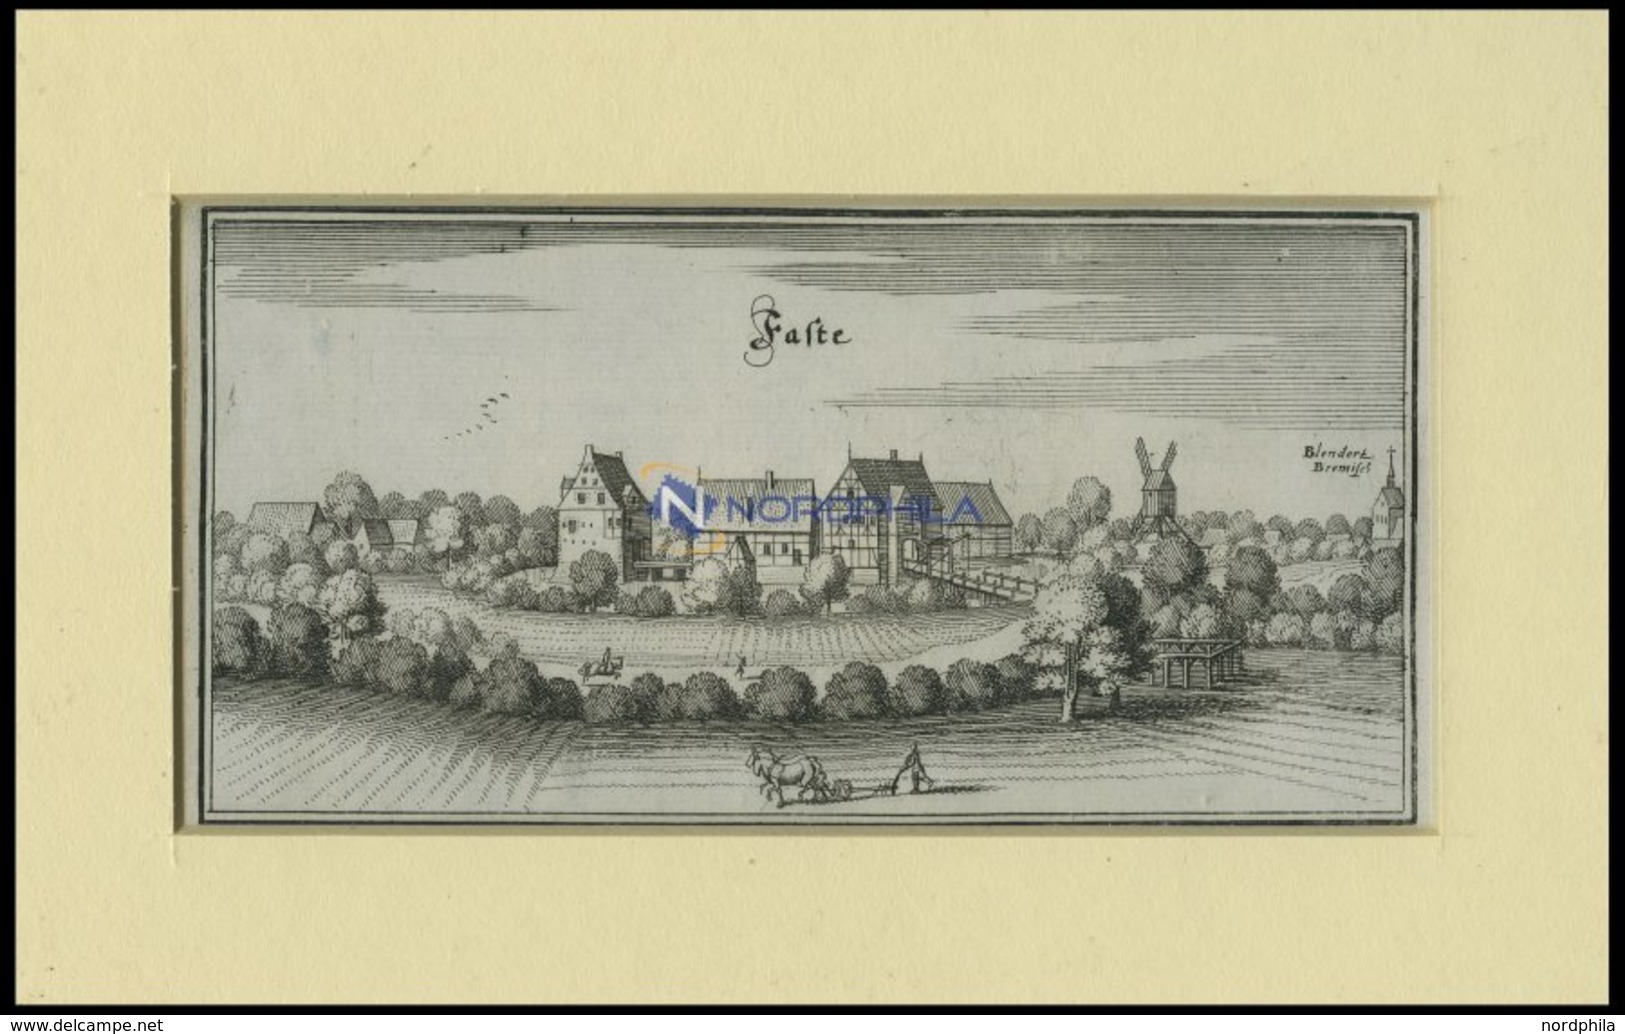 VARSTE, Gesamtansicht, Kupferstich Von Merian Um 1645 - Lithographien